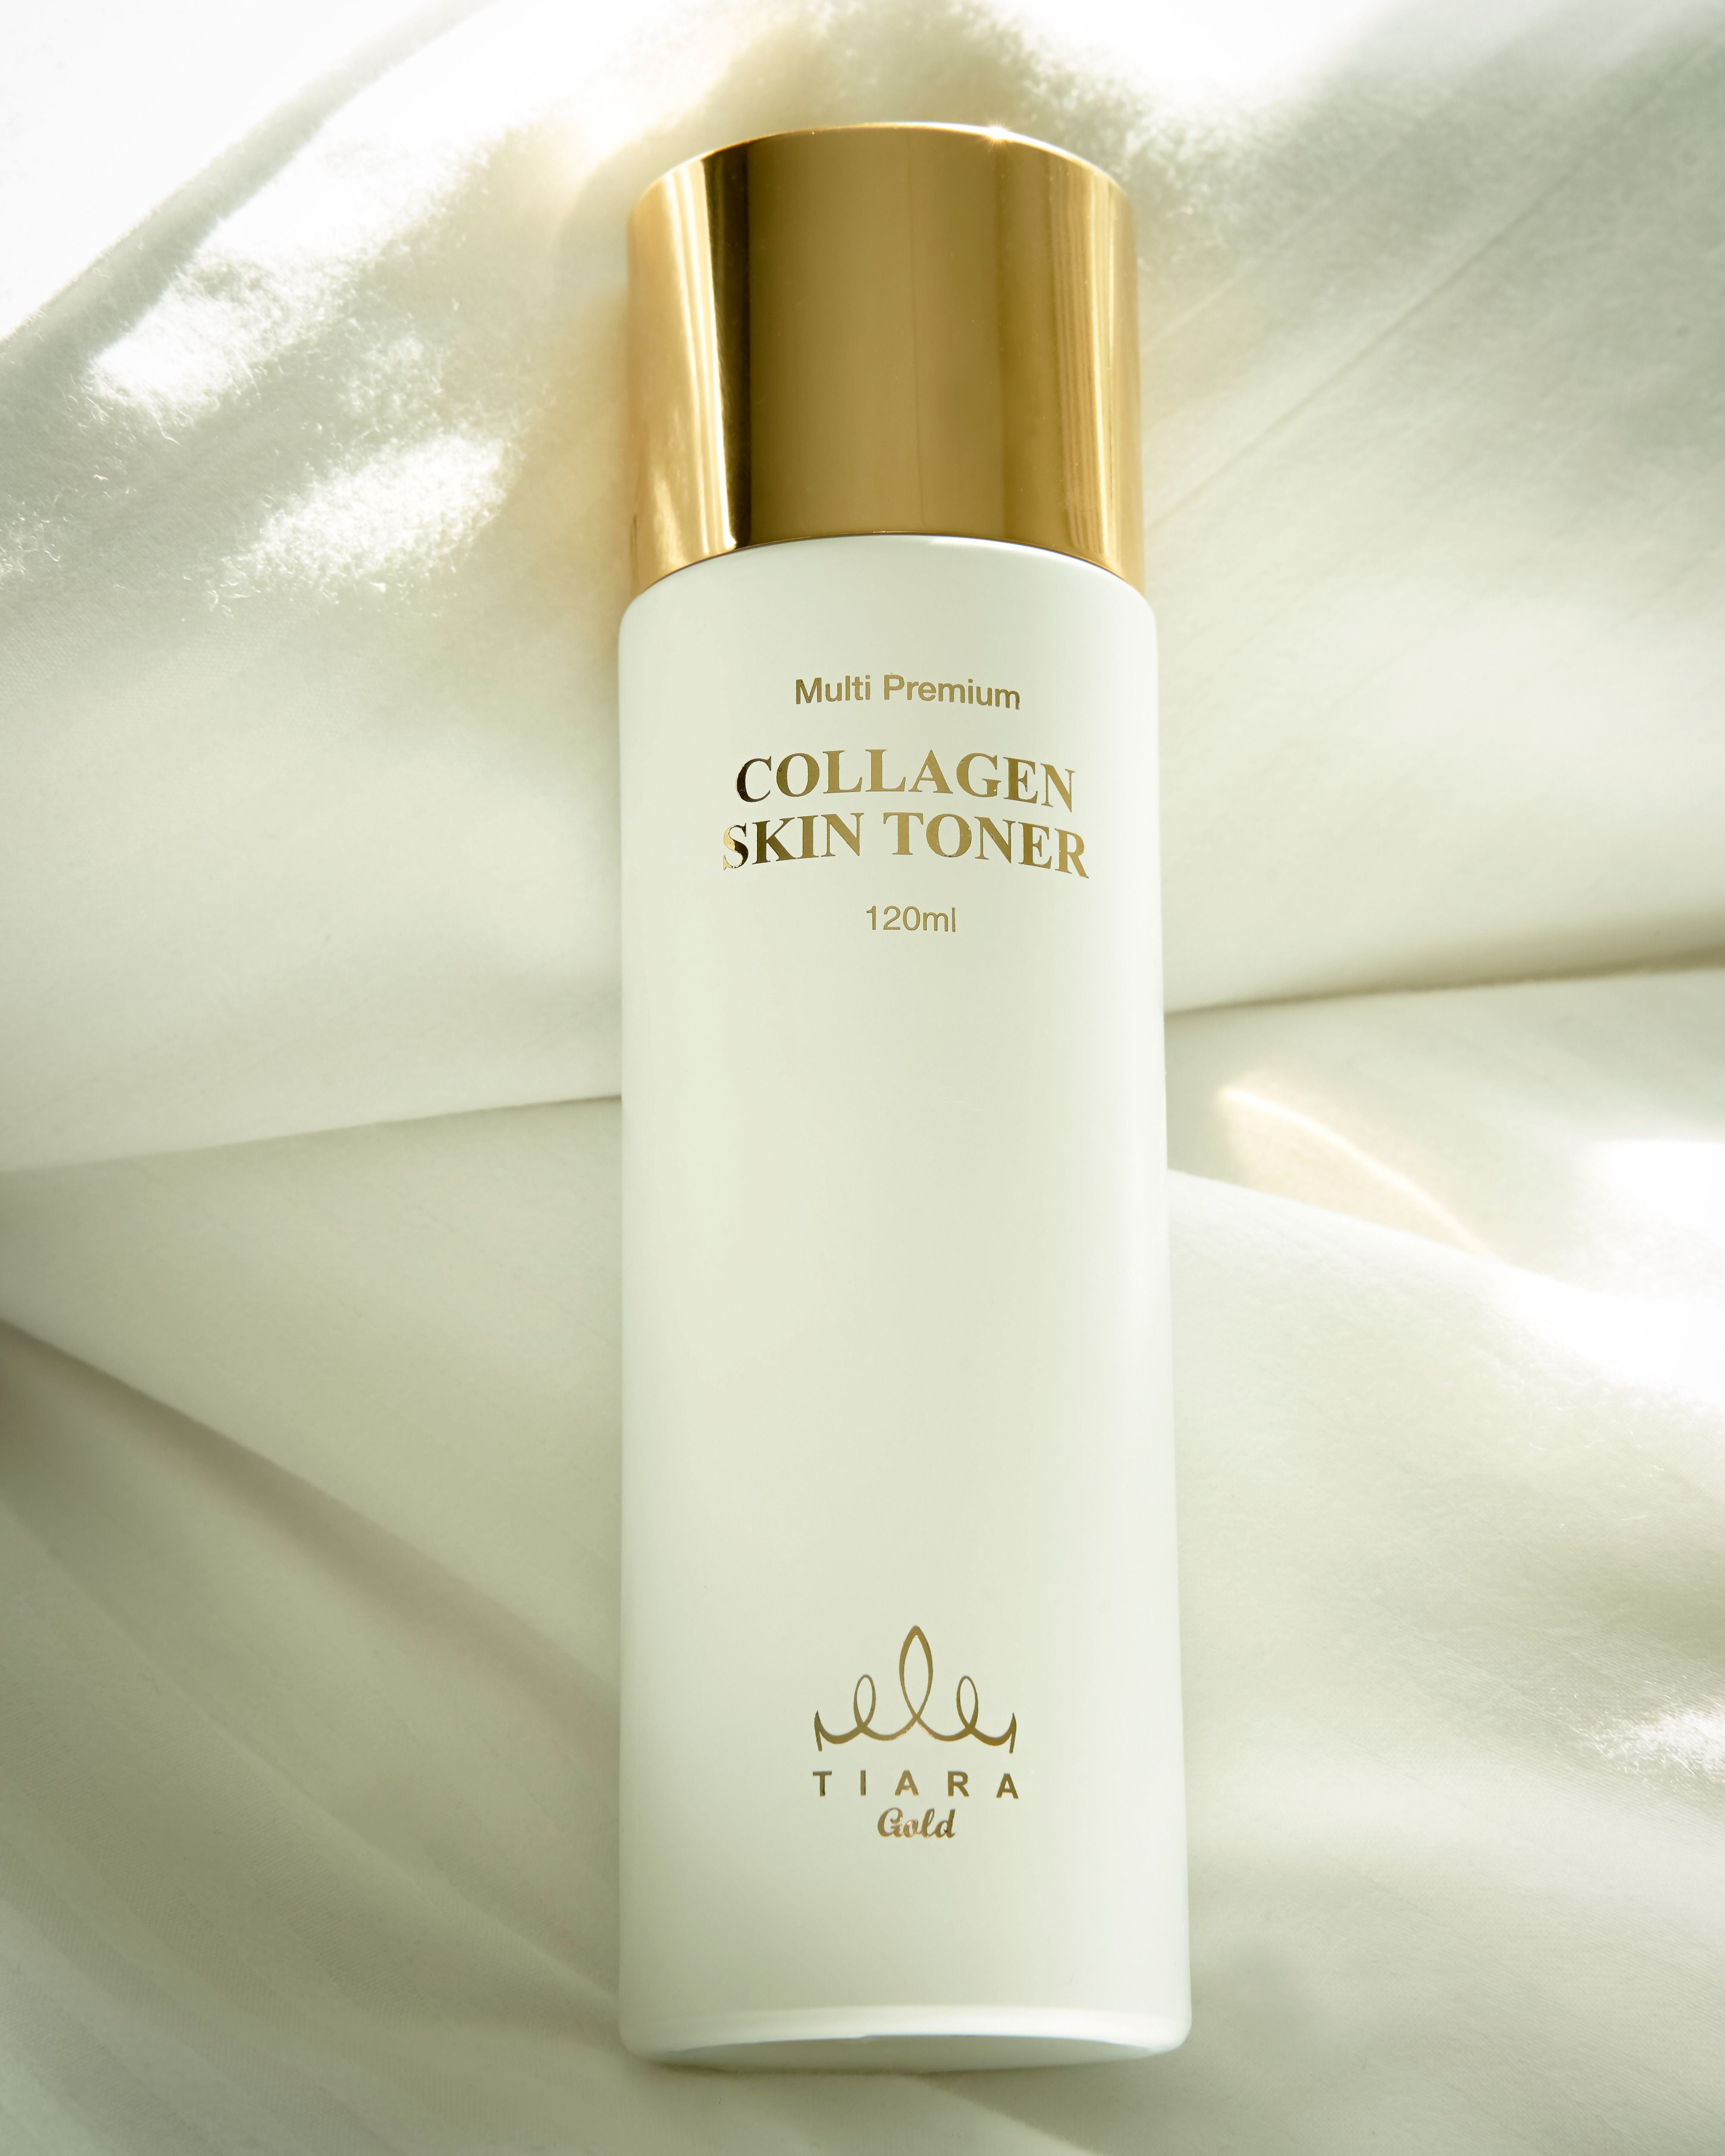 TIARA GOLD Multi Premium Collagen Skin Toner